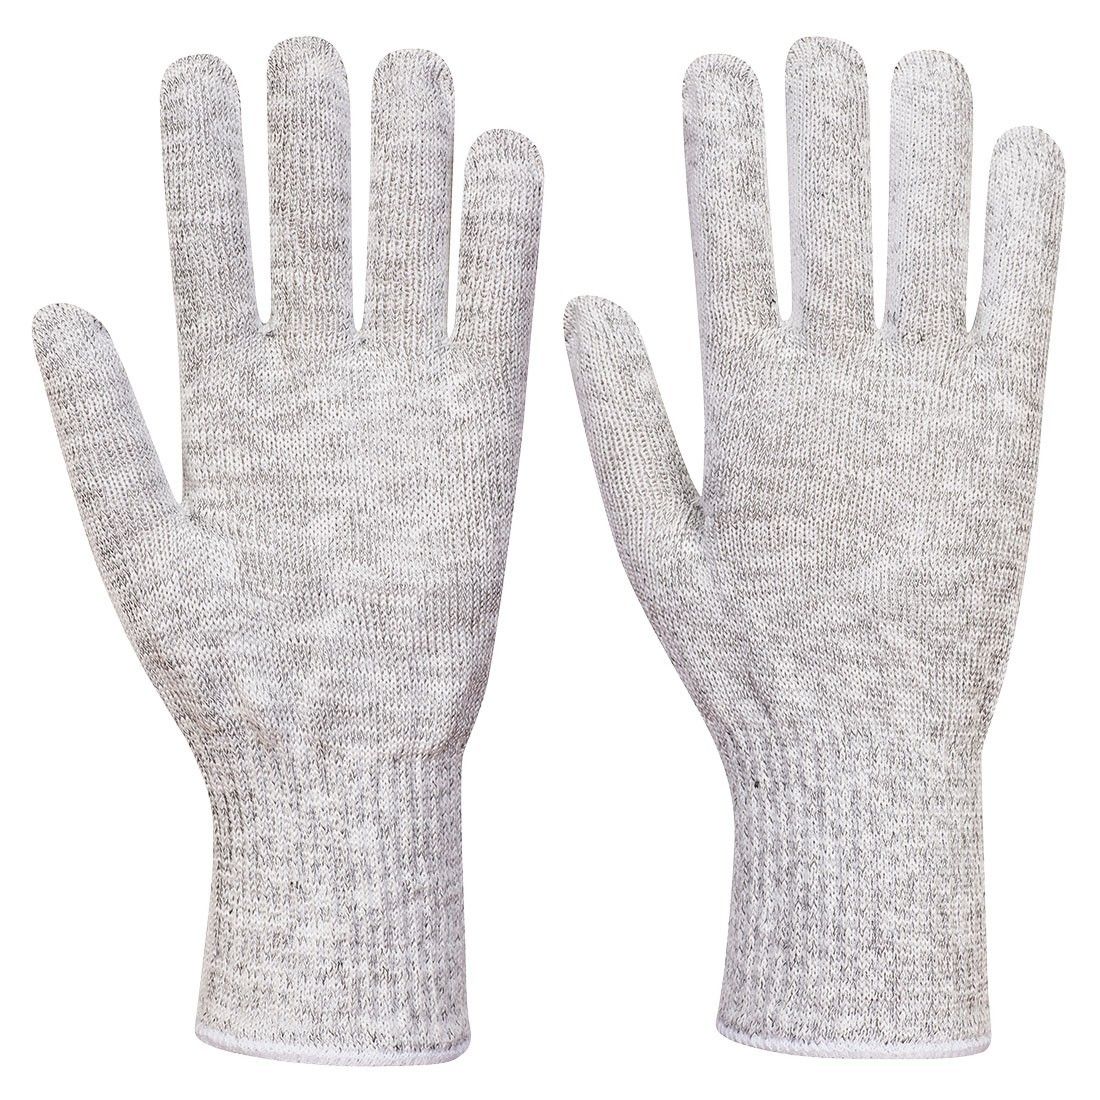 Portwest - Sous gants alimentaires AHR 10 gris - Carbonn